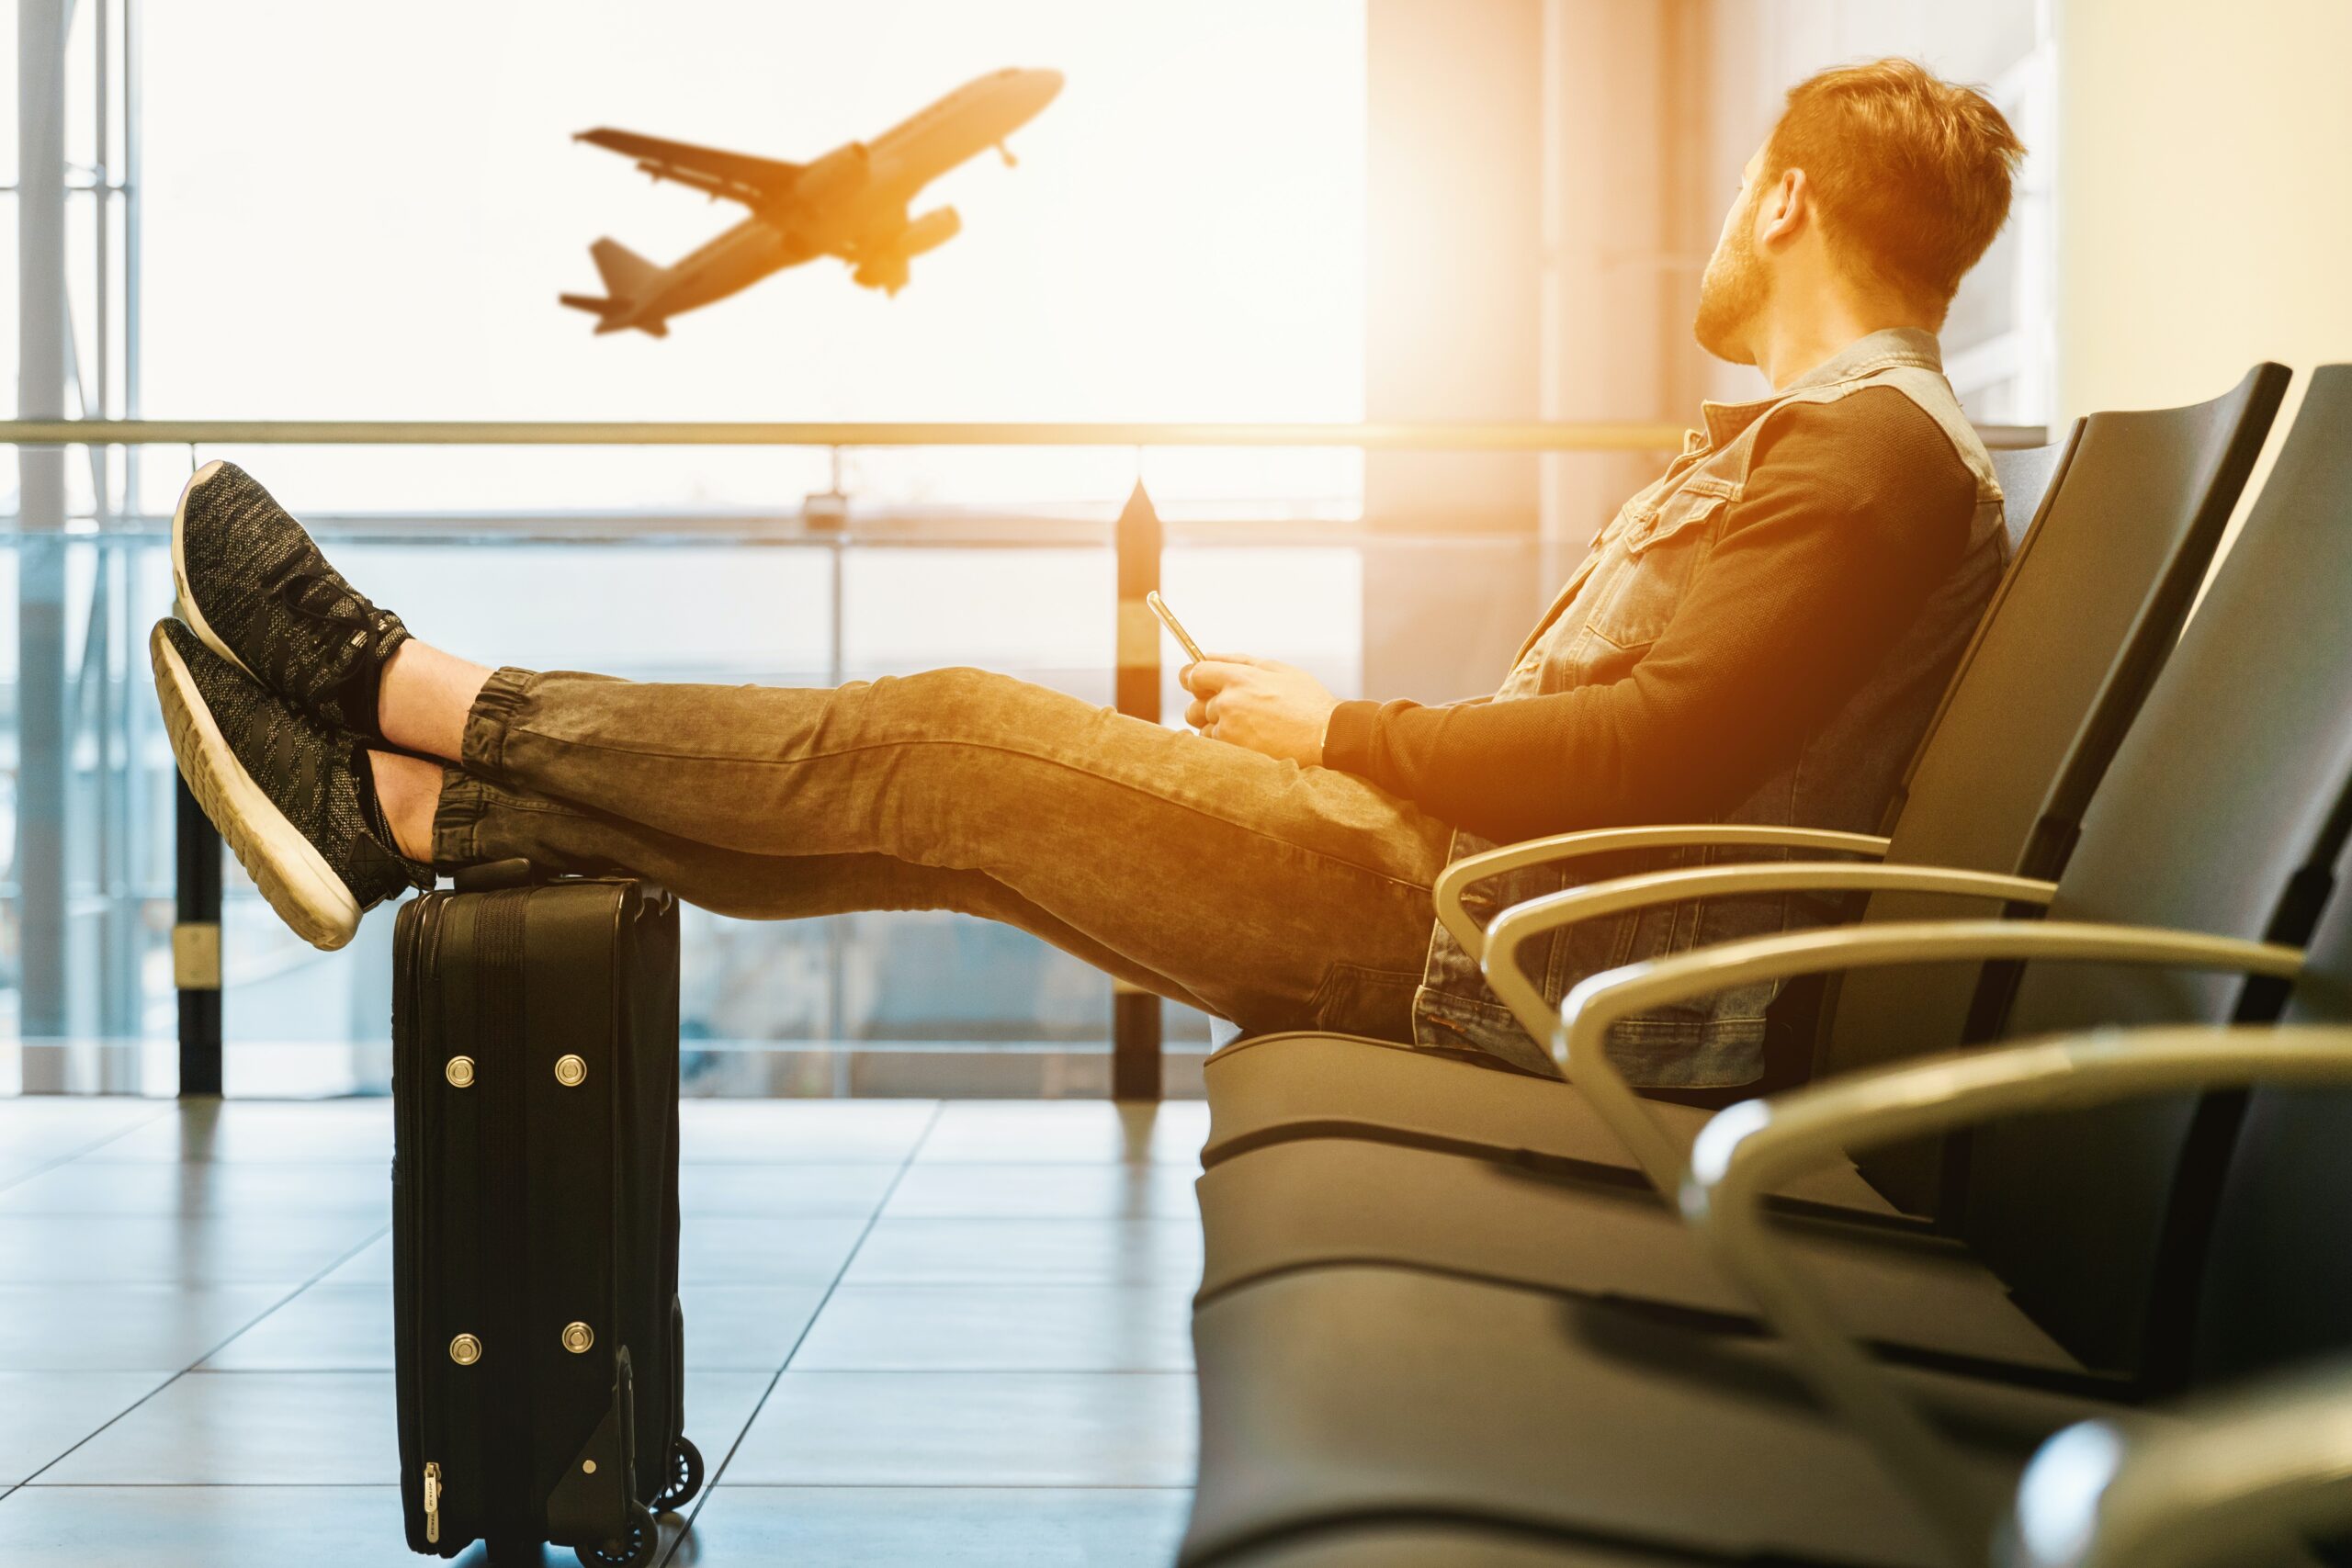 Zboruri anulate și întârziate: cauze, soluții și impactul asupra industriei aeriene